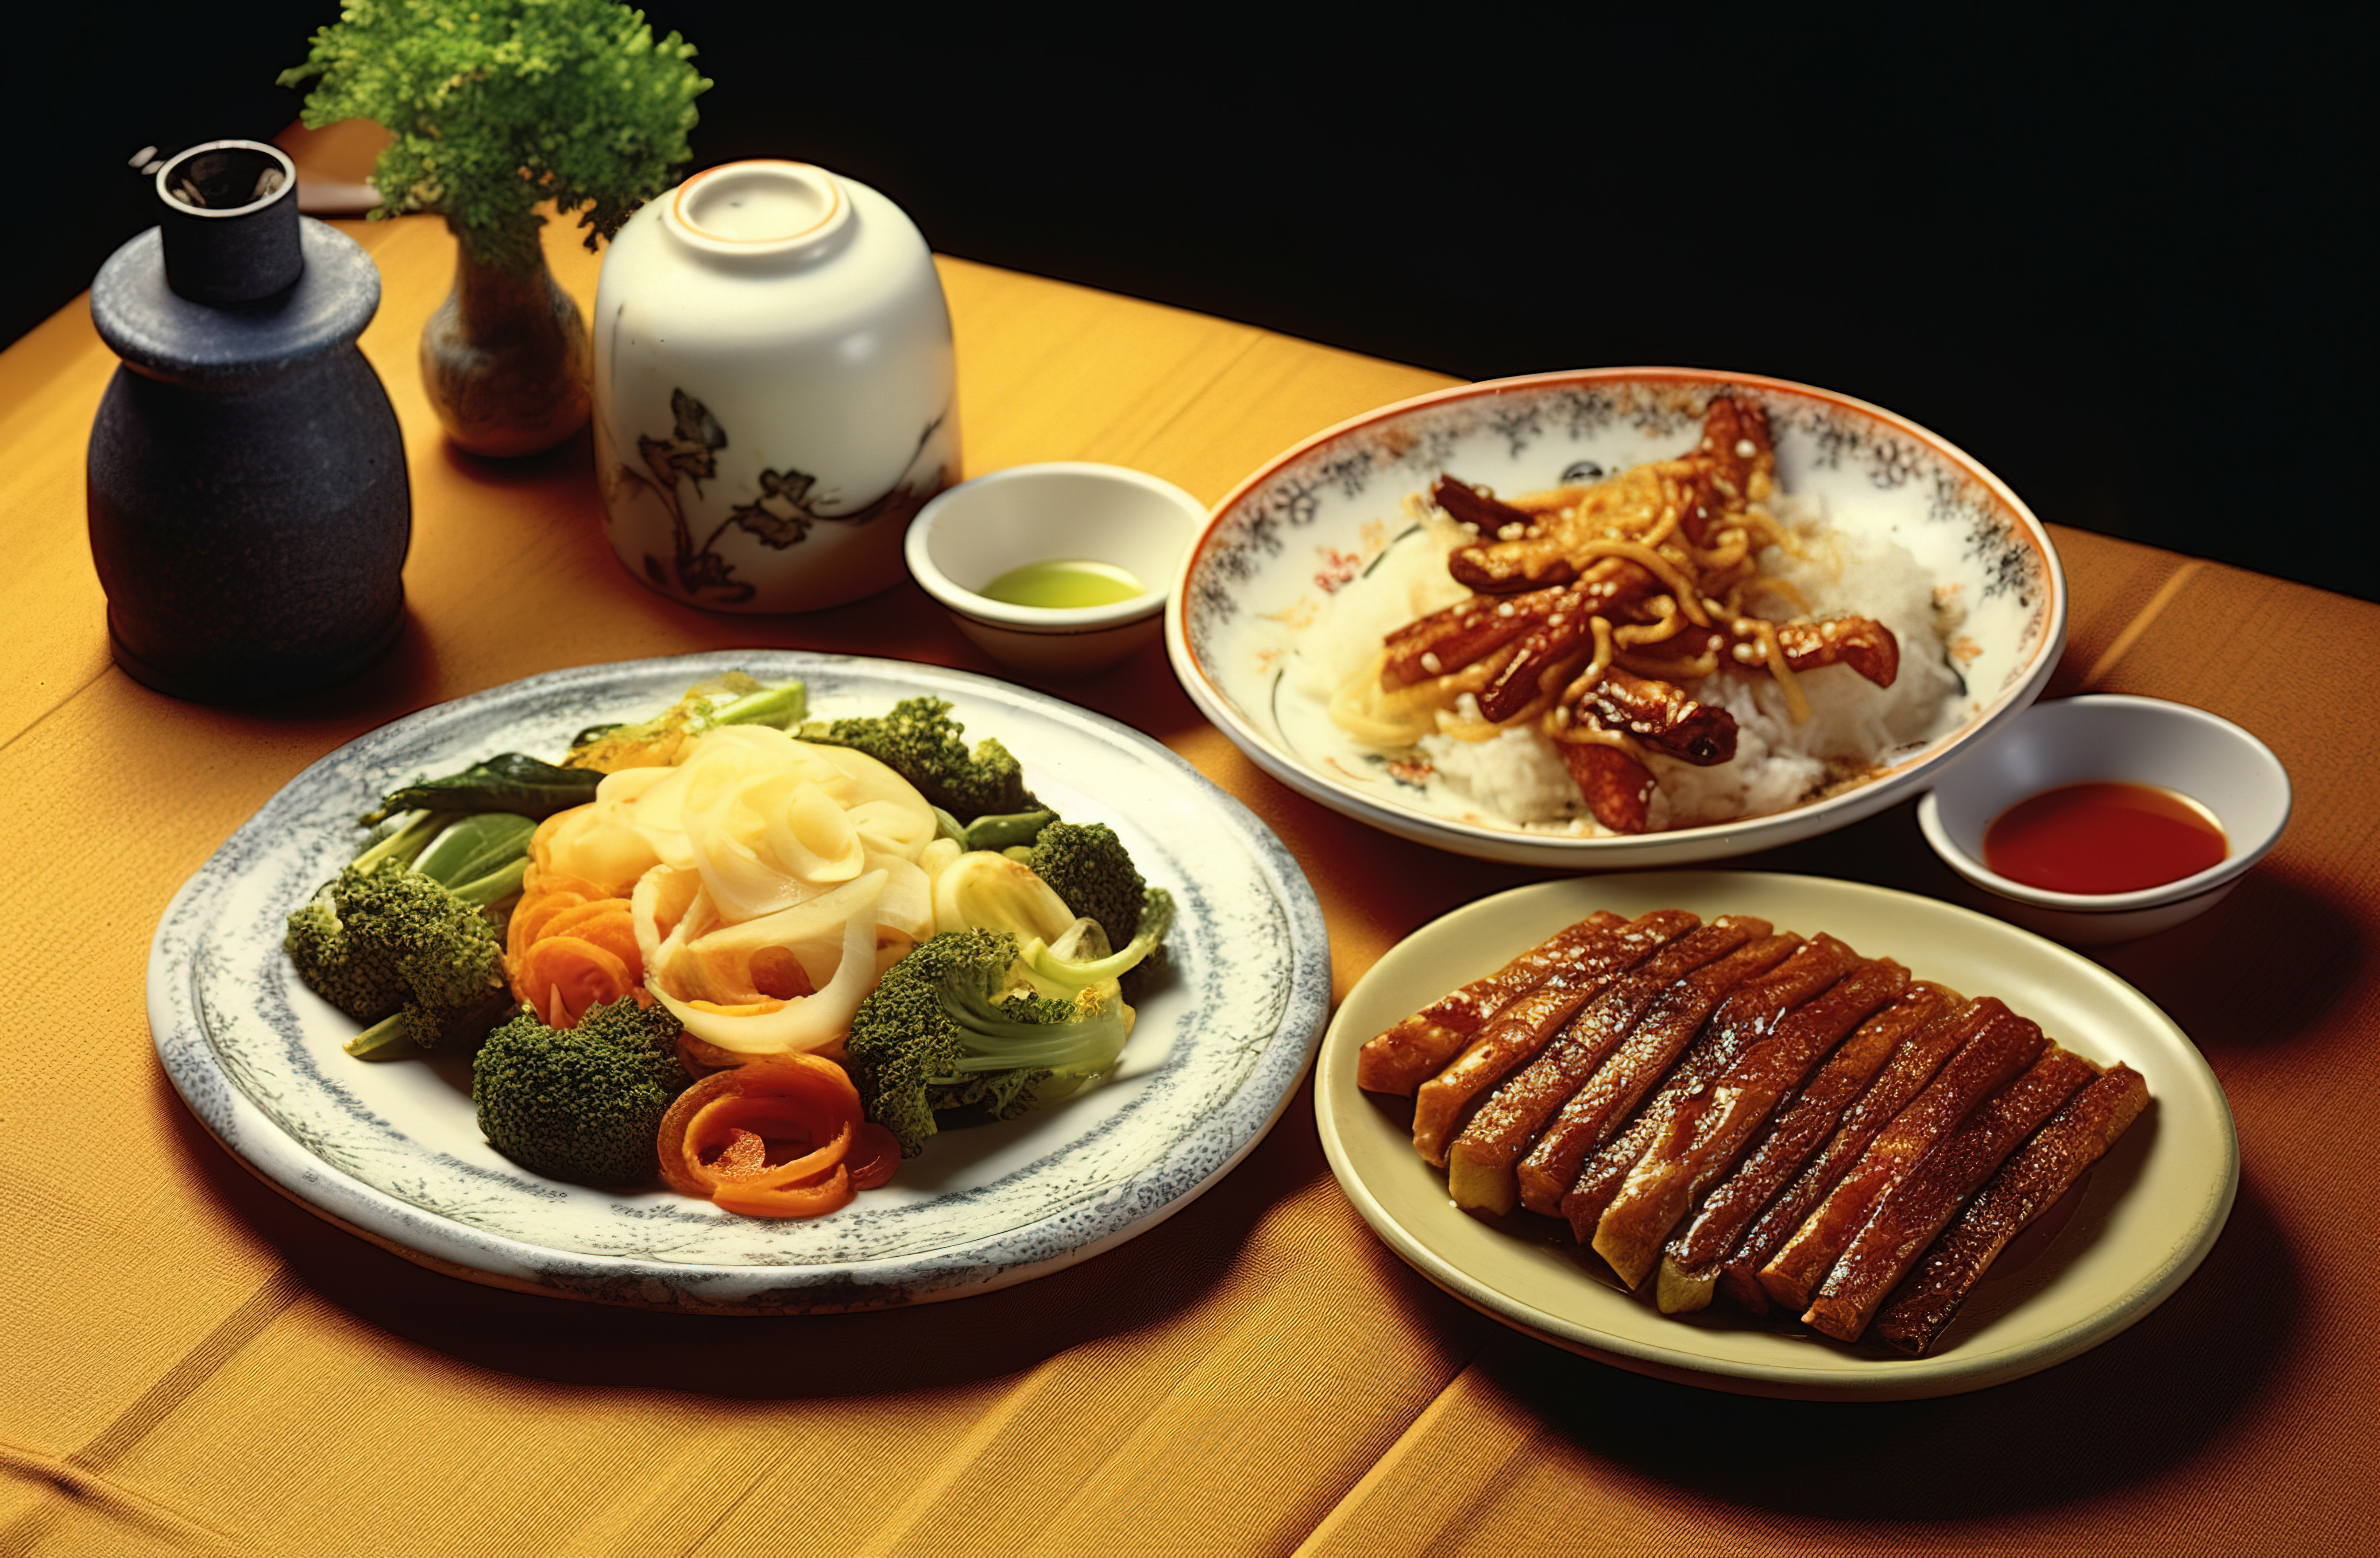 中国传统美食 Saejung大田图片